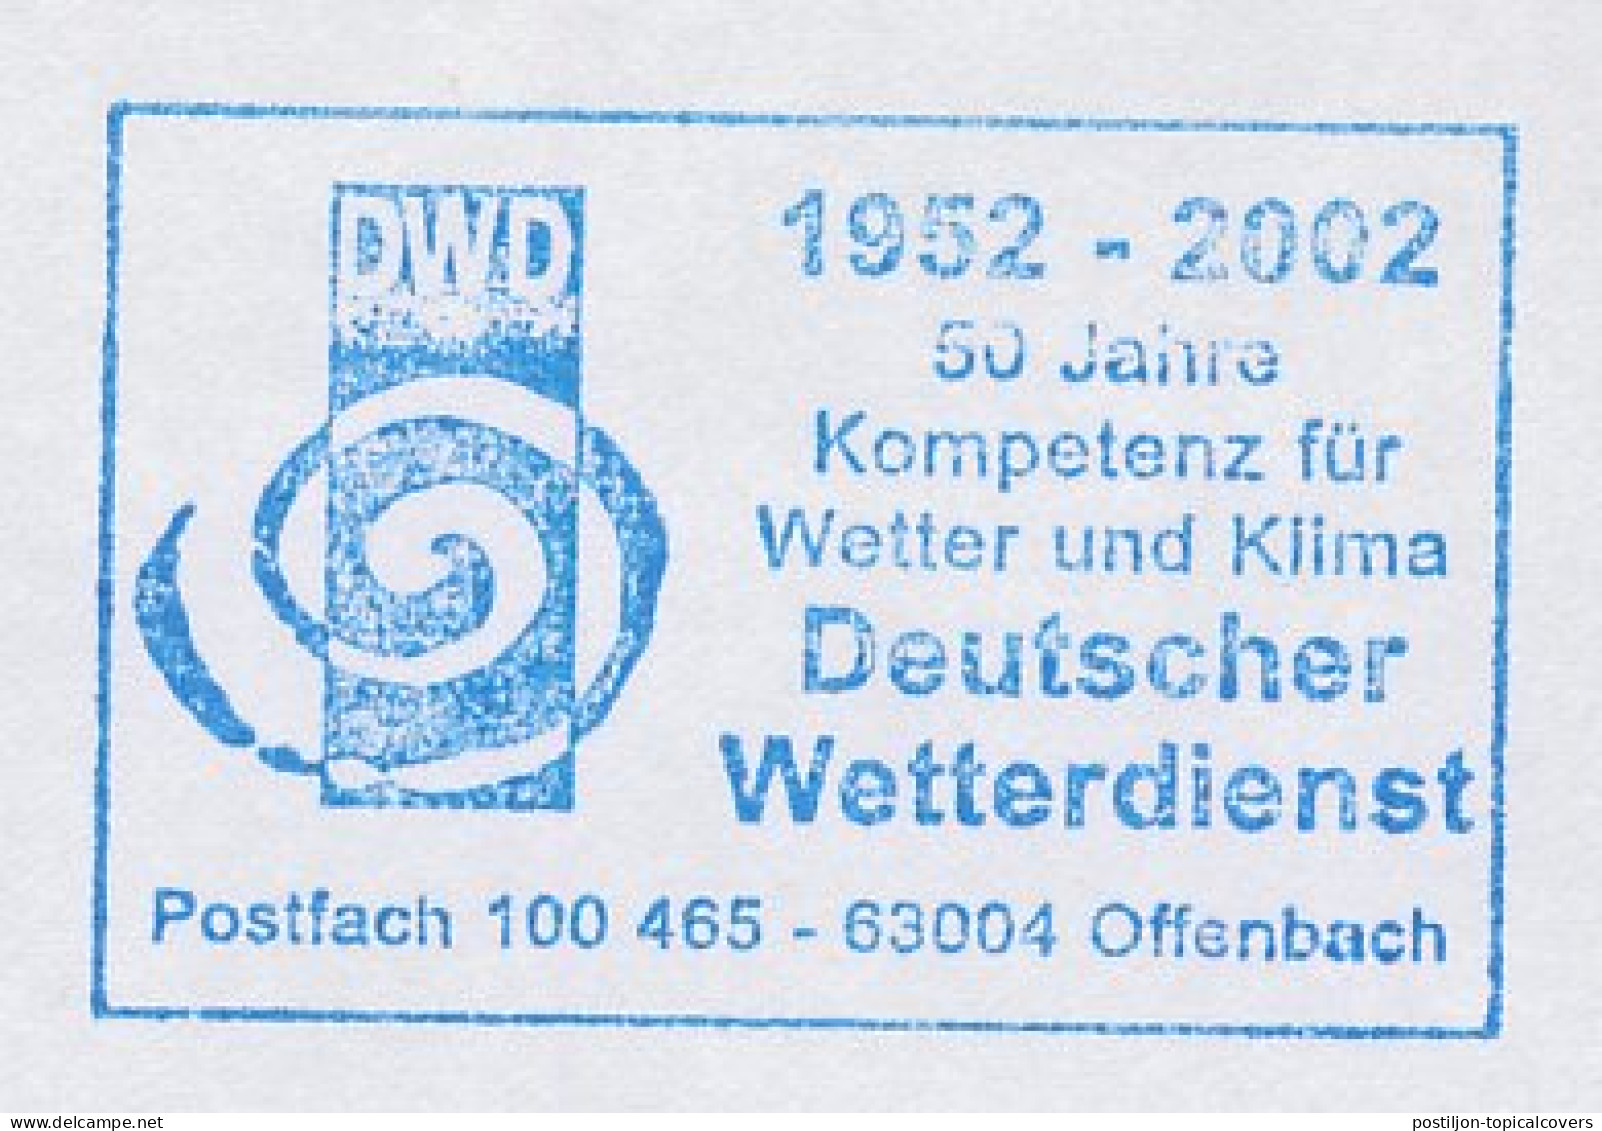 Meter Cut Germany 2002 Meteorological Service - Climate & Meteorology